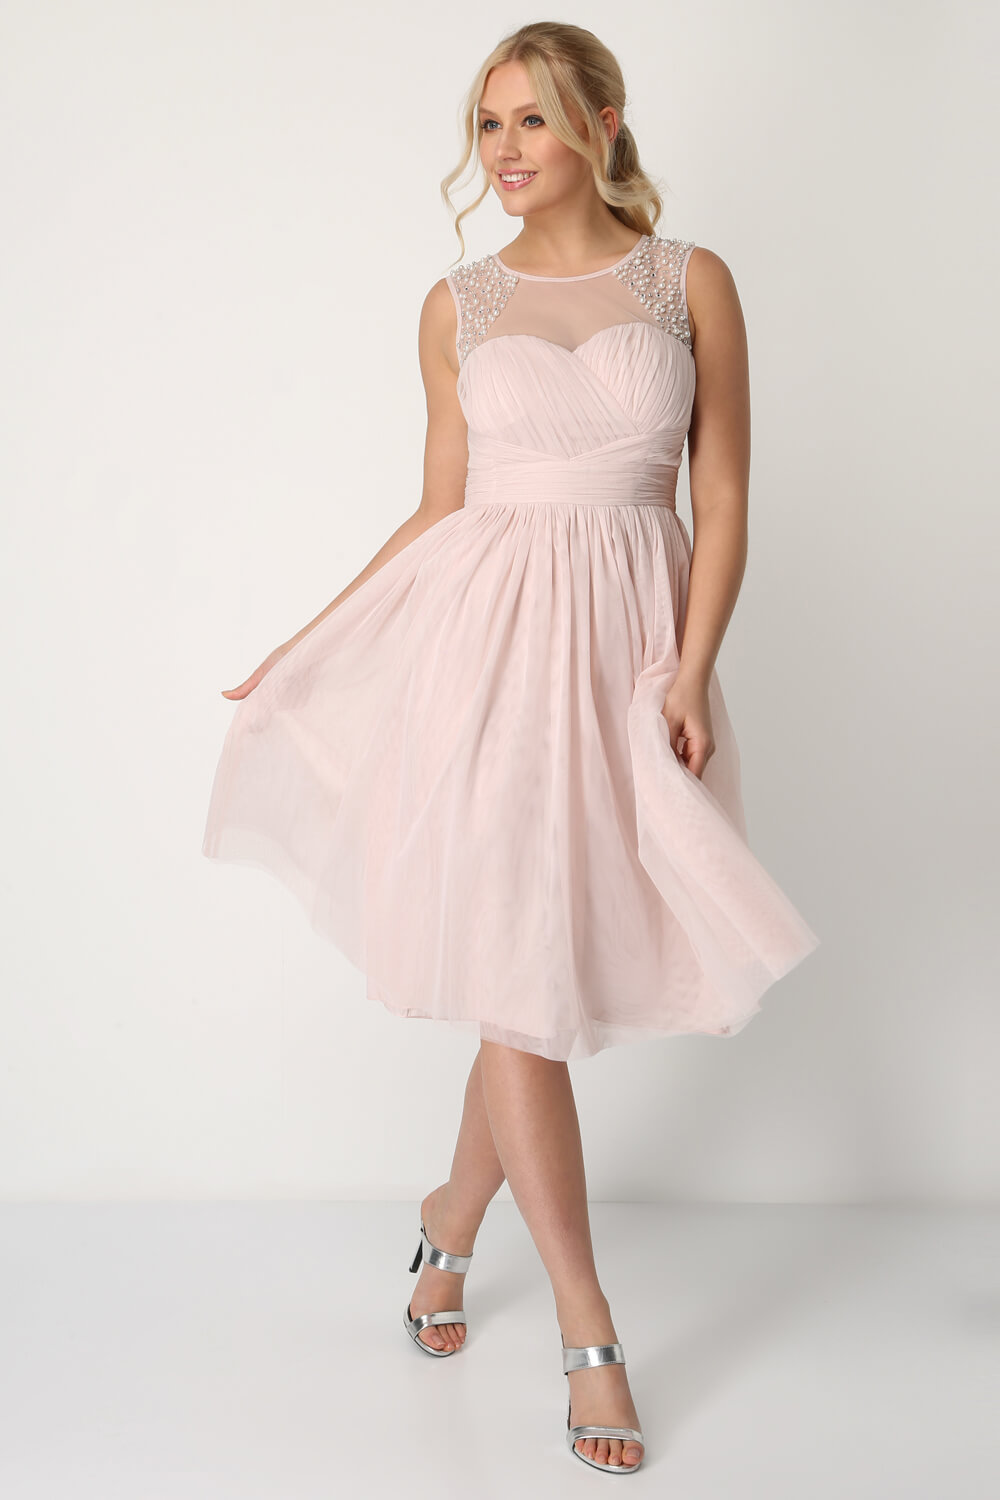 Light Pink Bead Embellished Knee Length Dress, Image 3 of 5